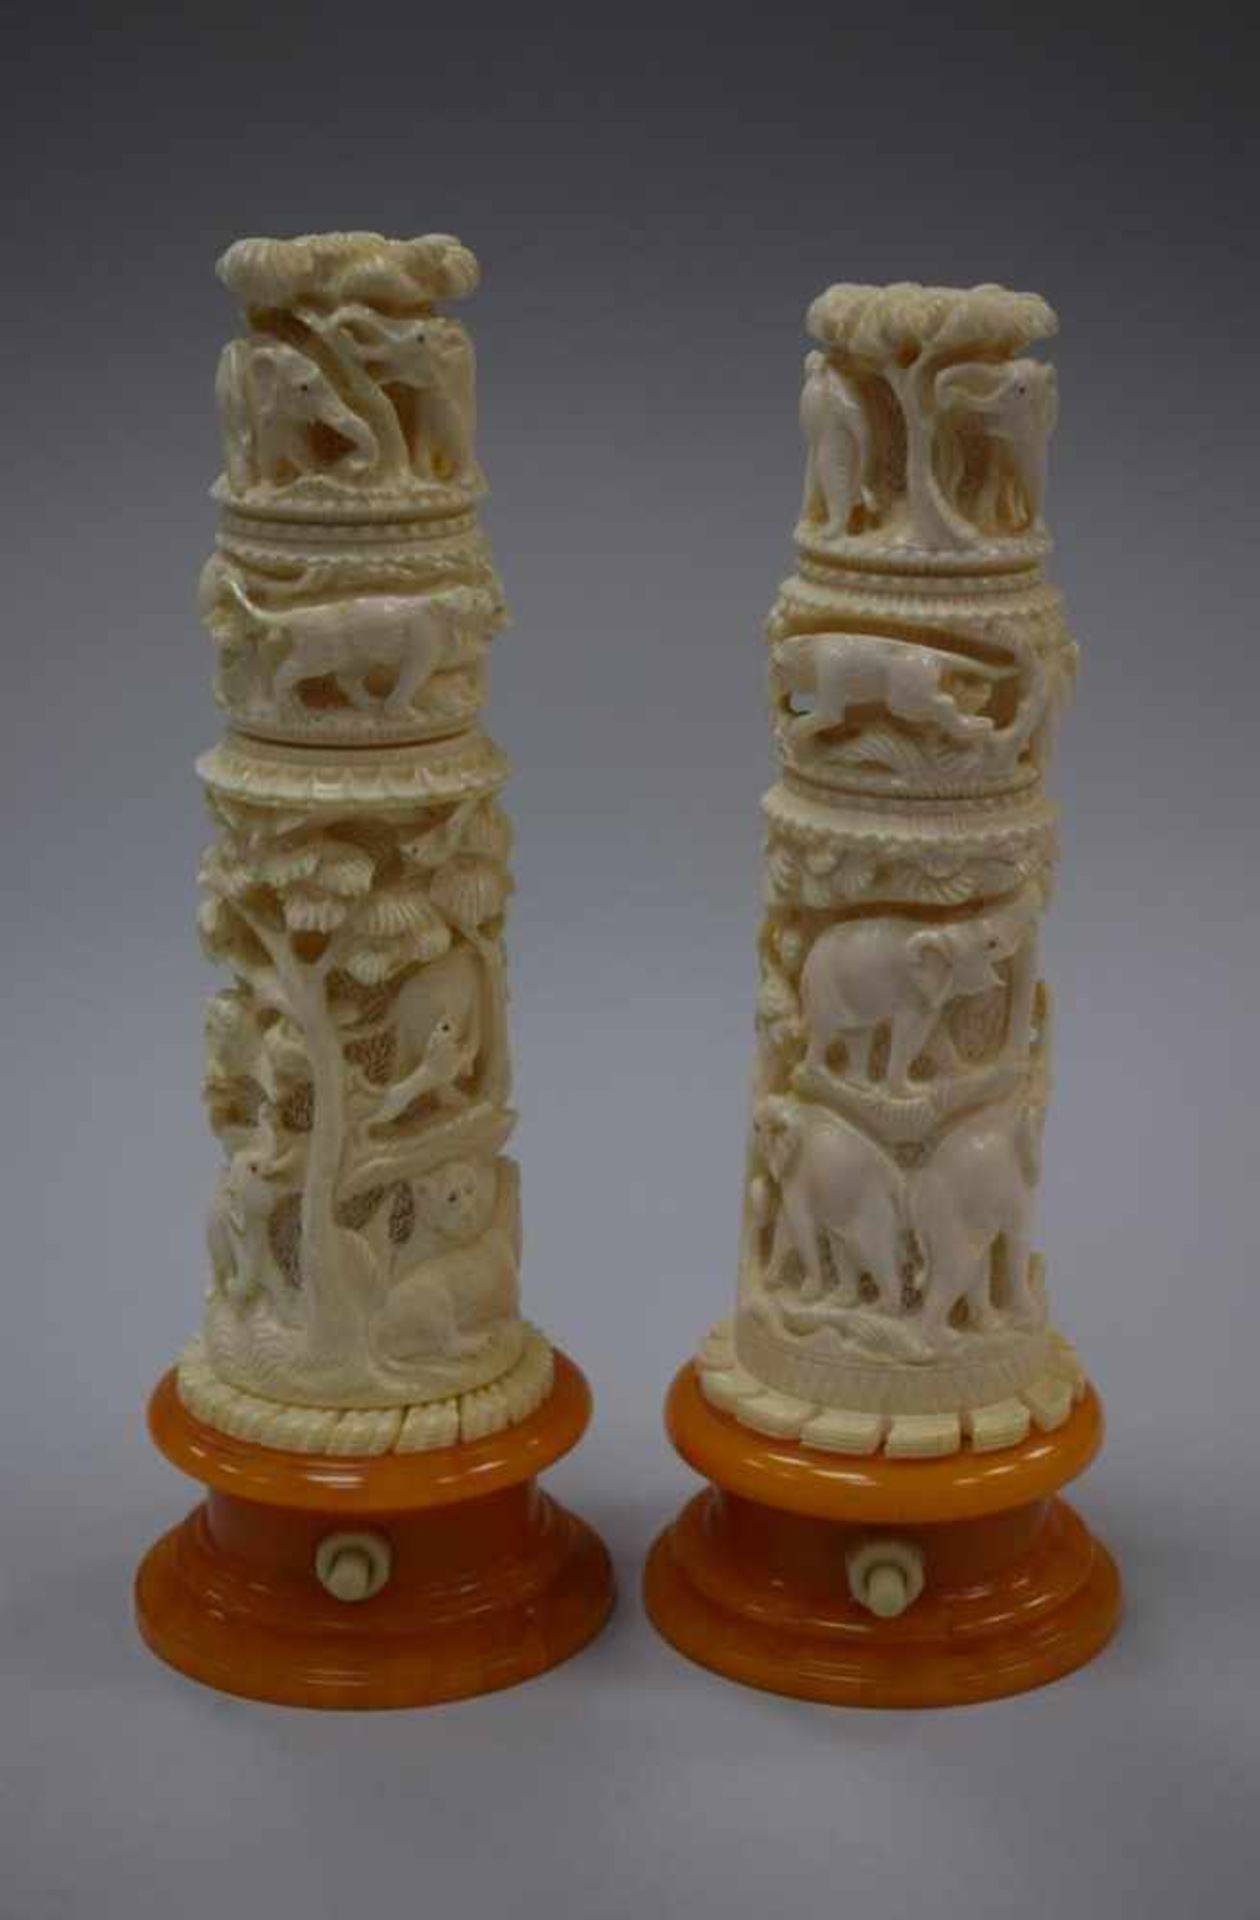 2 Lampen aufwendige ElfenbeinschnitzereienFeine Schnitzereien auf dem Lampen von Löwen, Elefanten